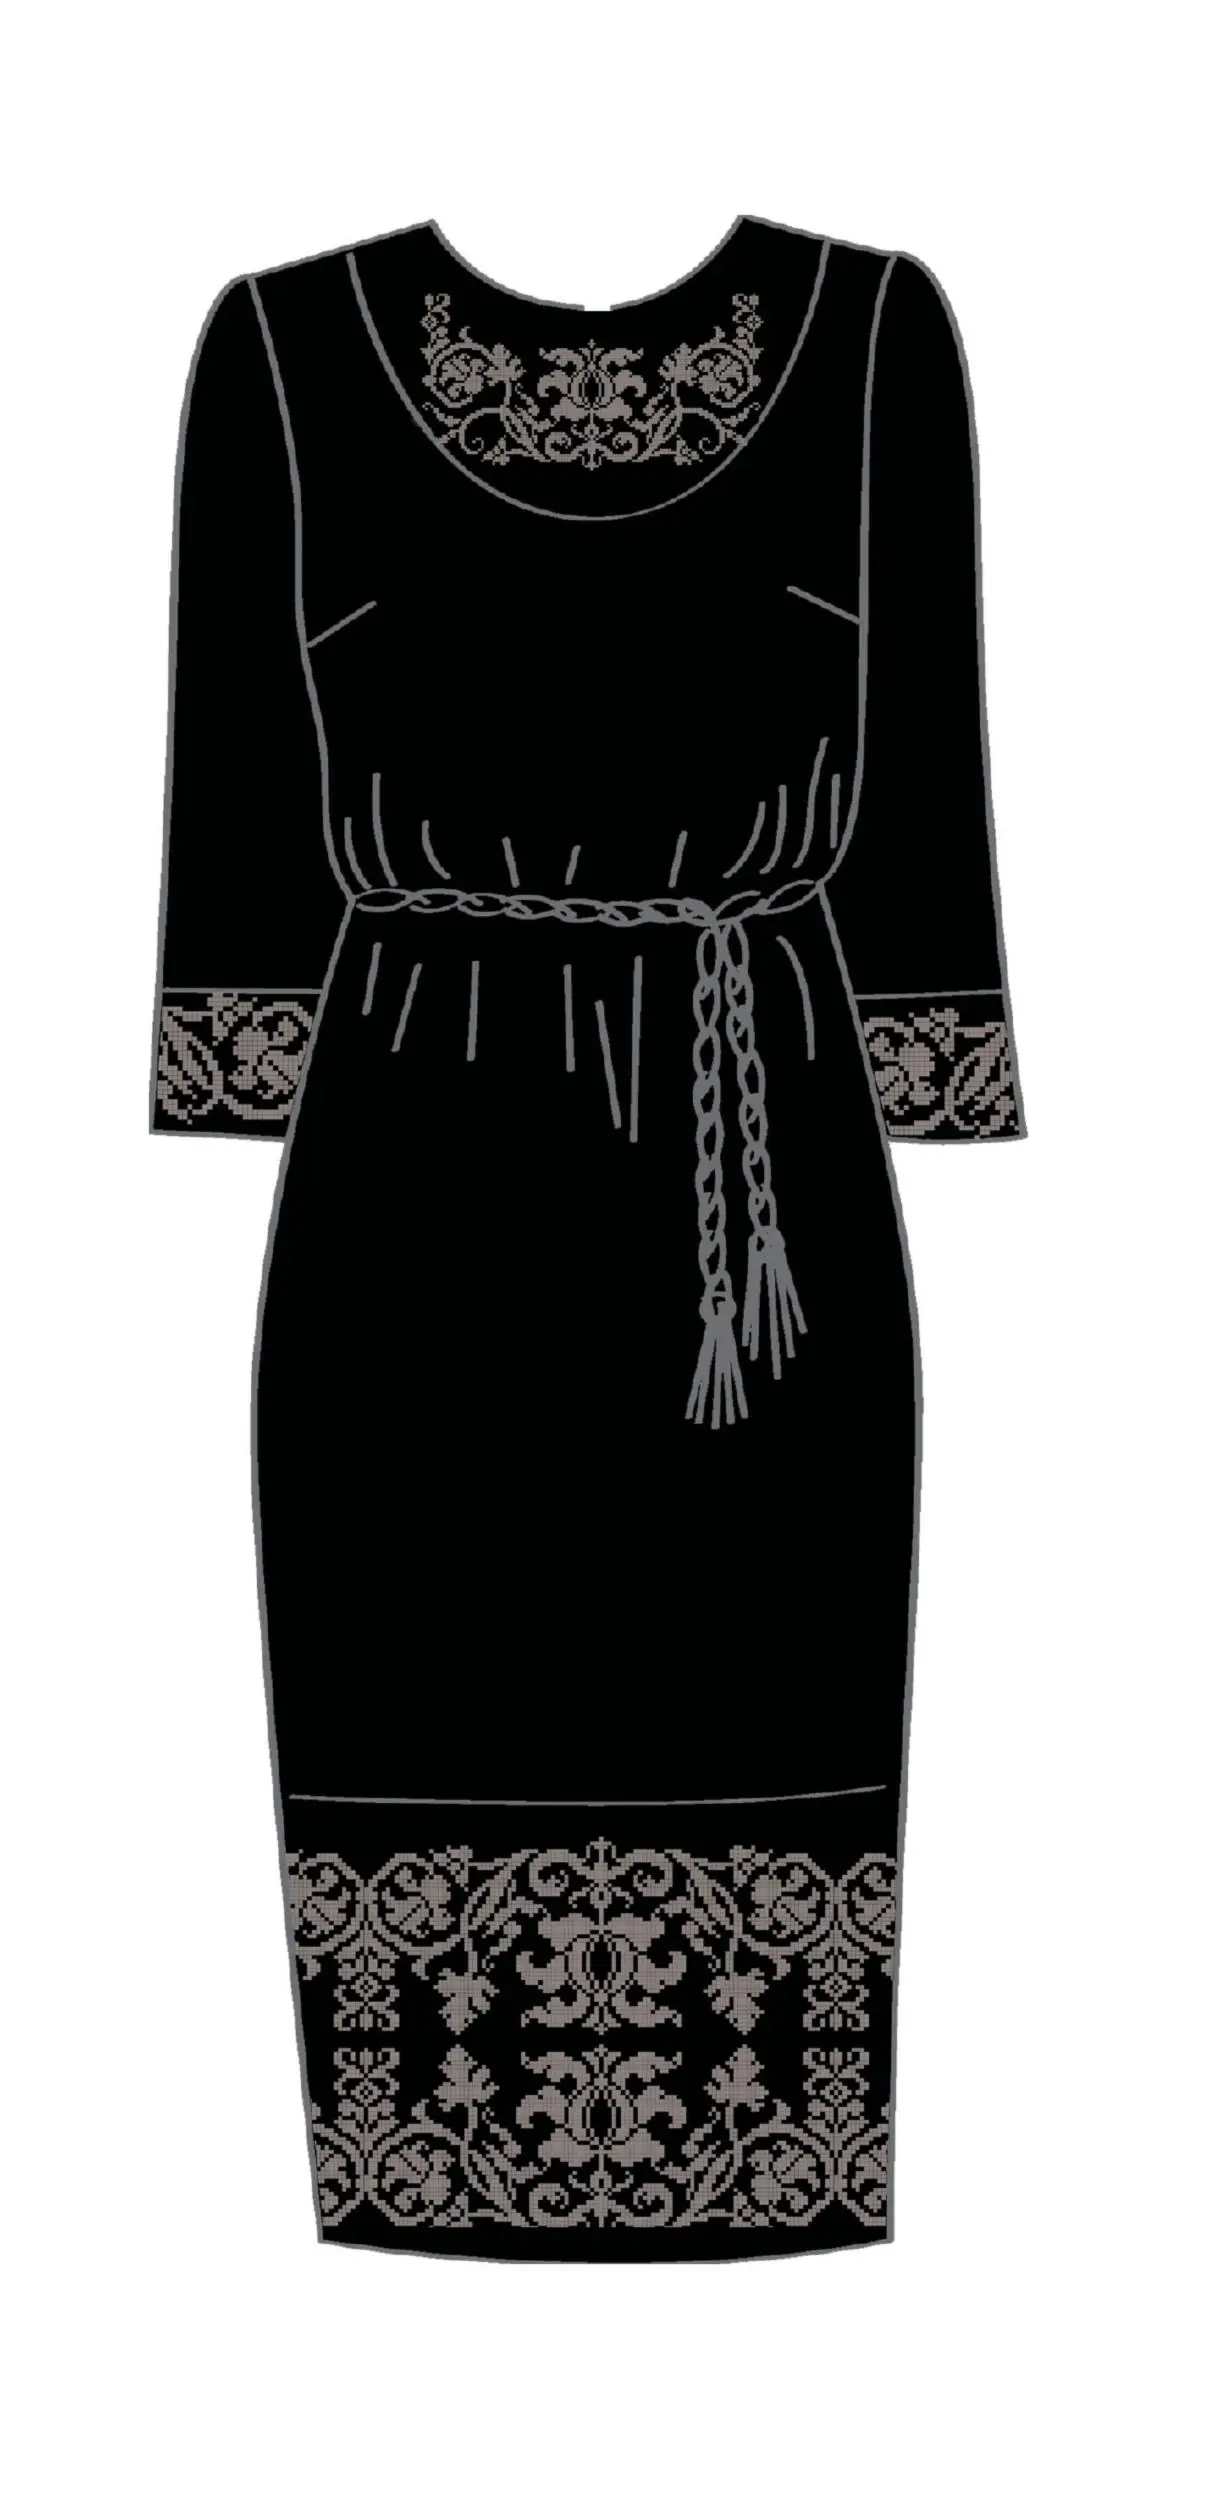 820-14/10 Плаття жіноче з поясом, чорне, розмір 40